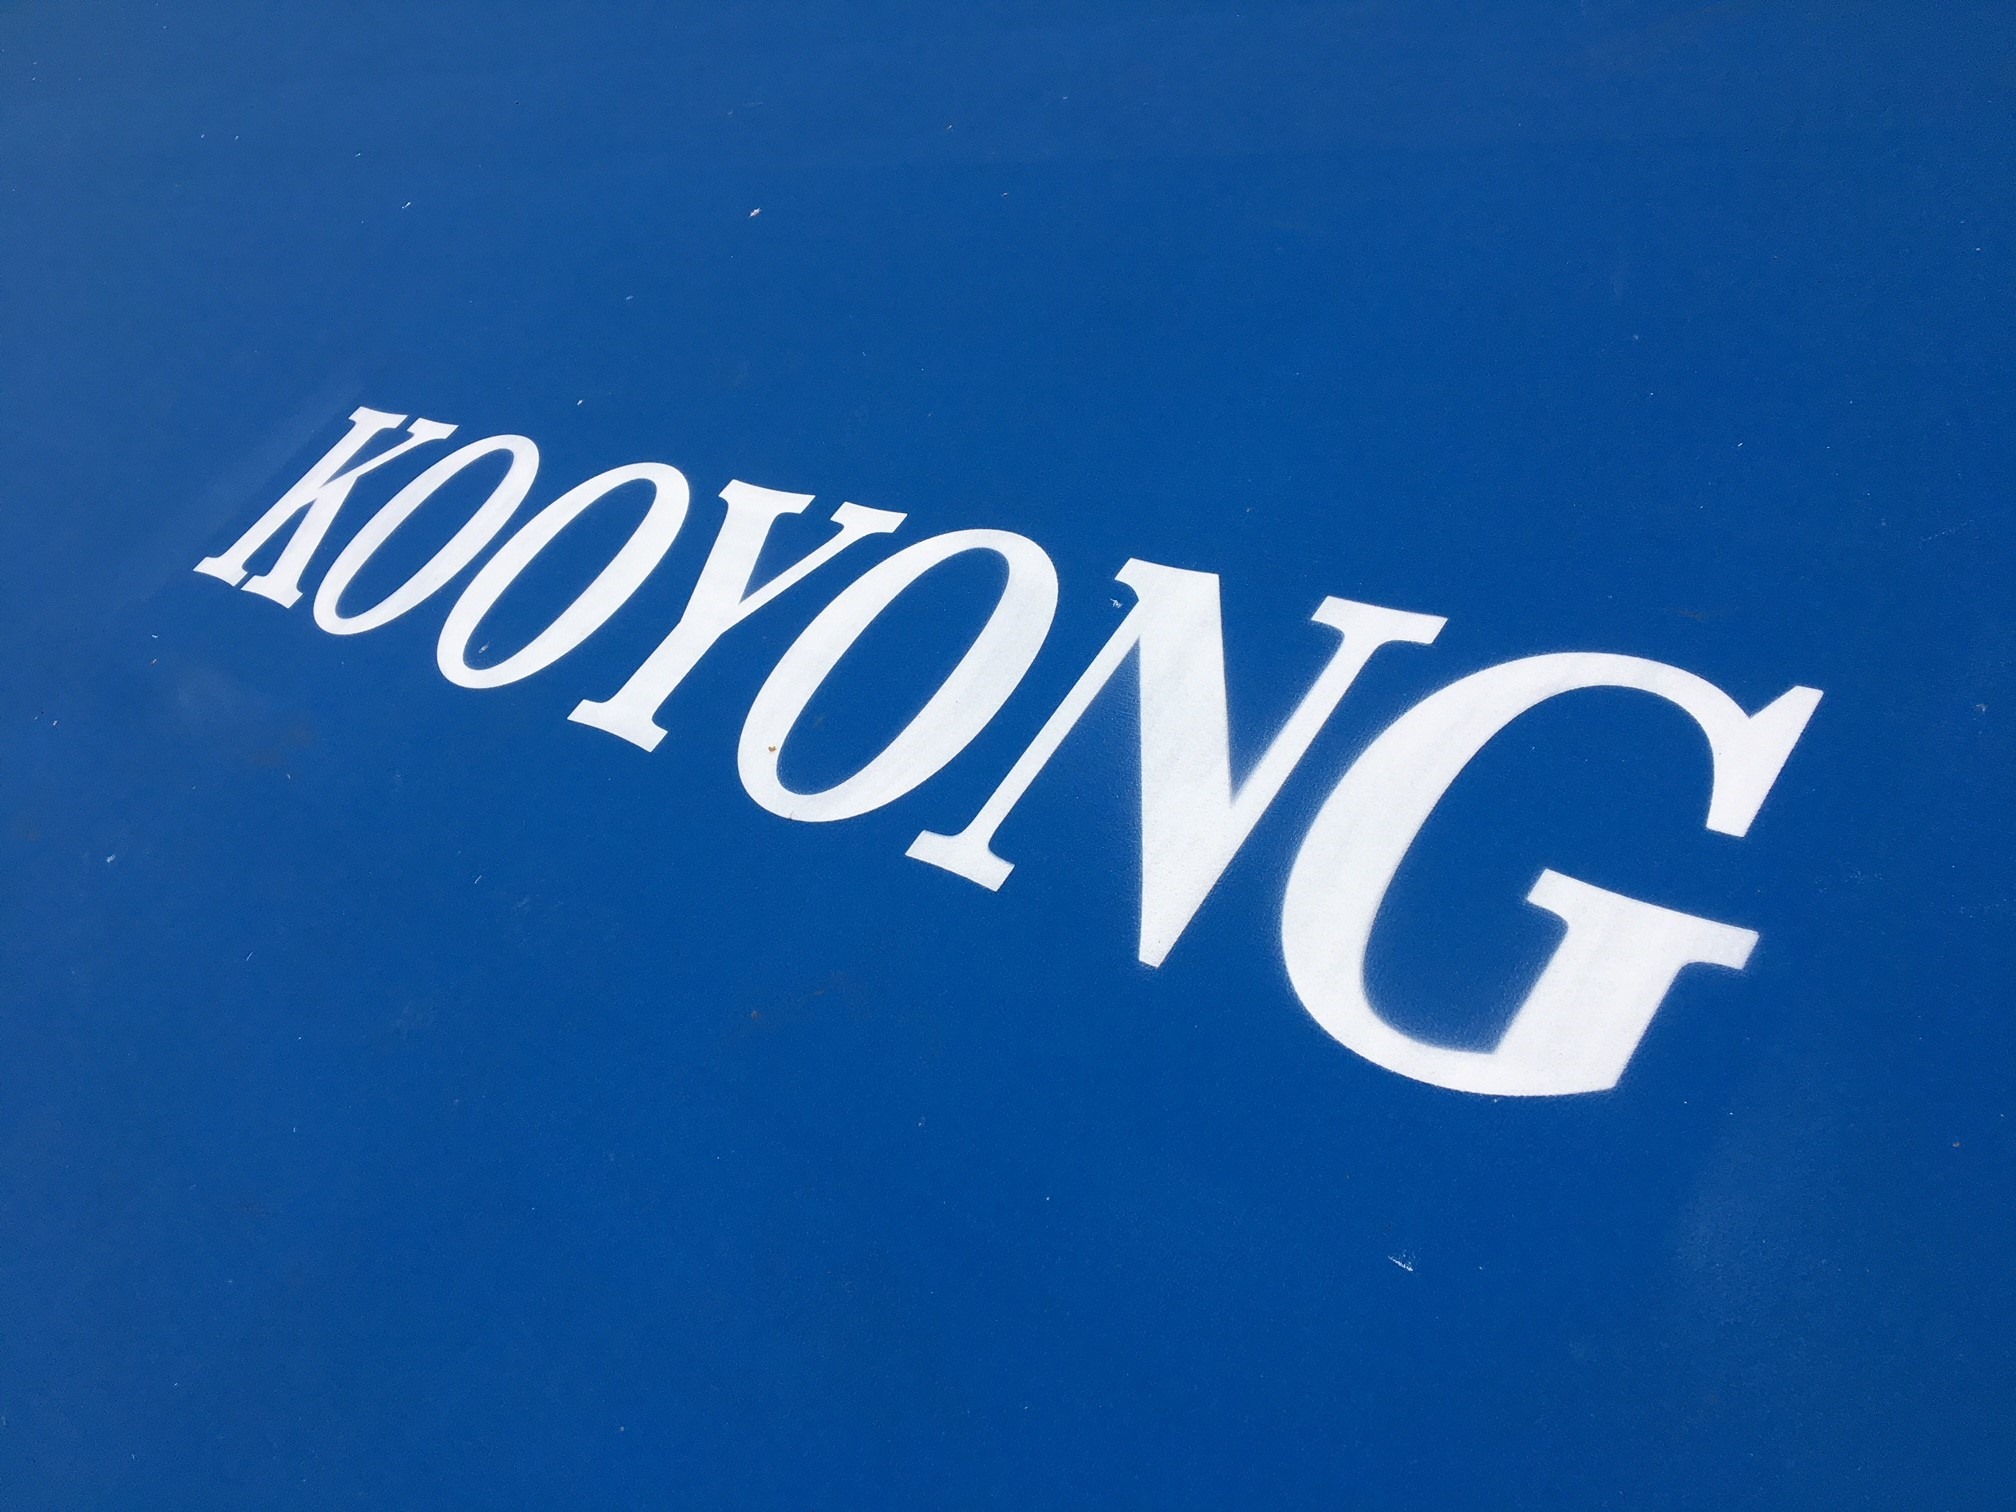 Kooyong